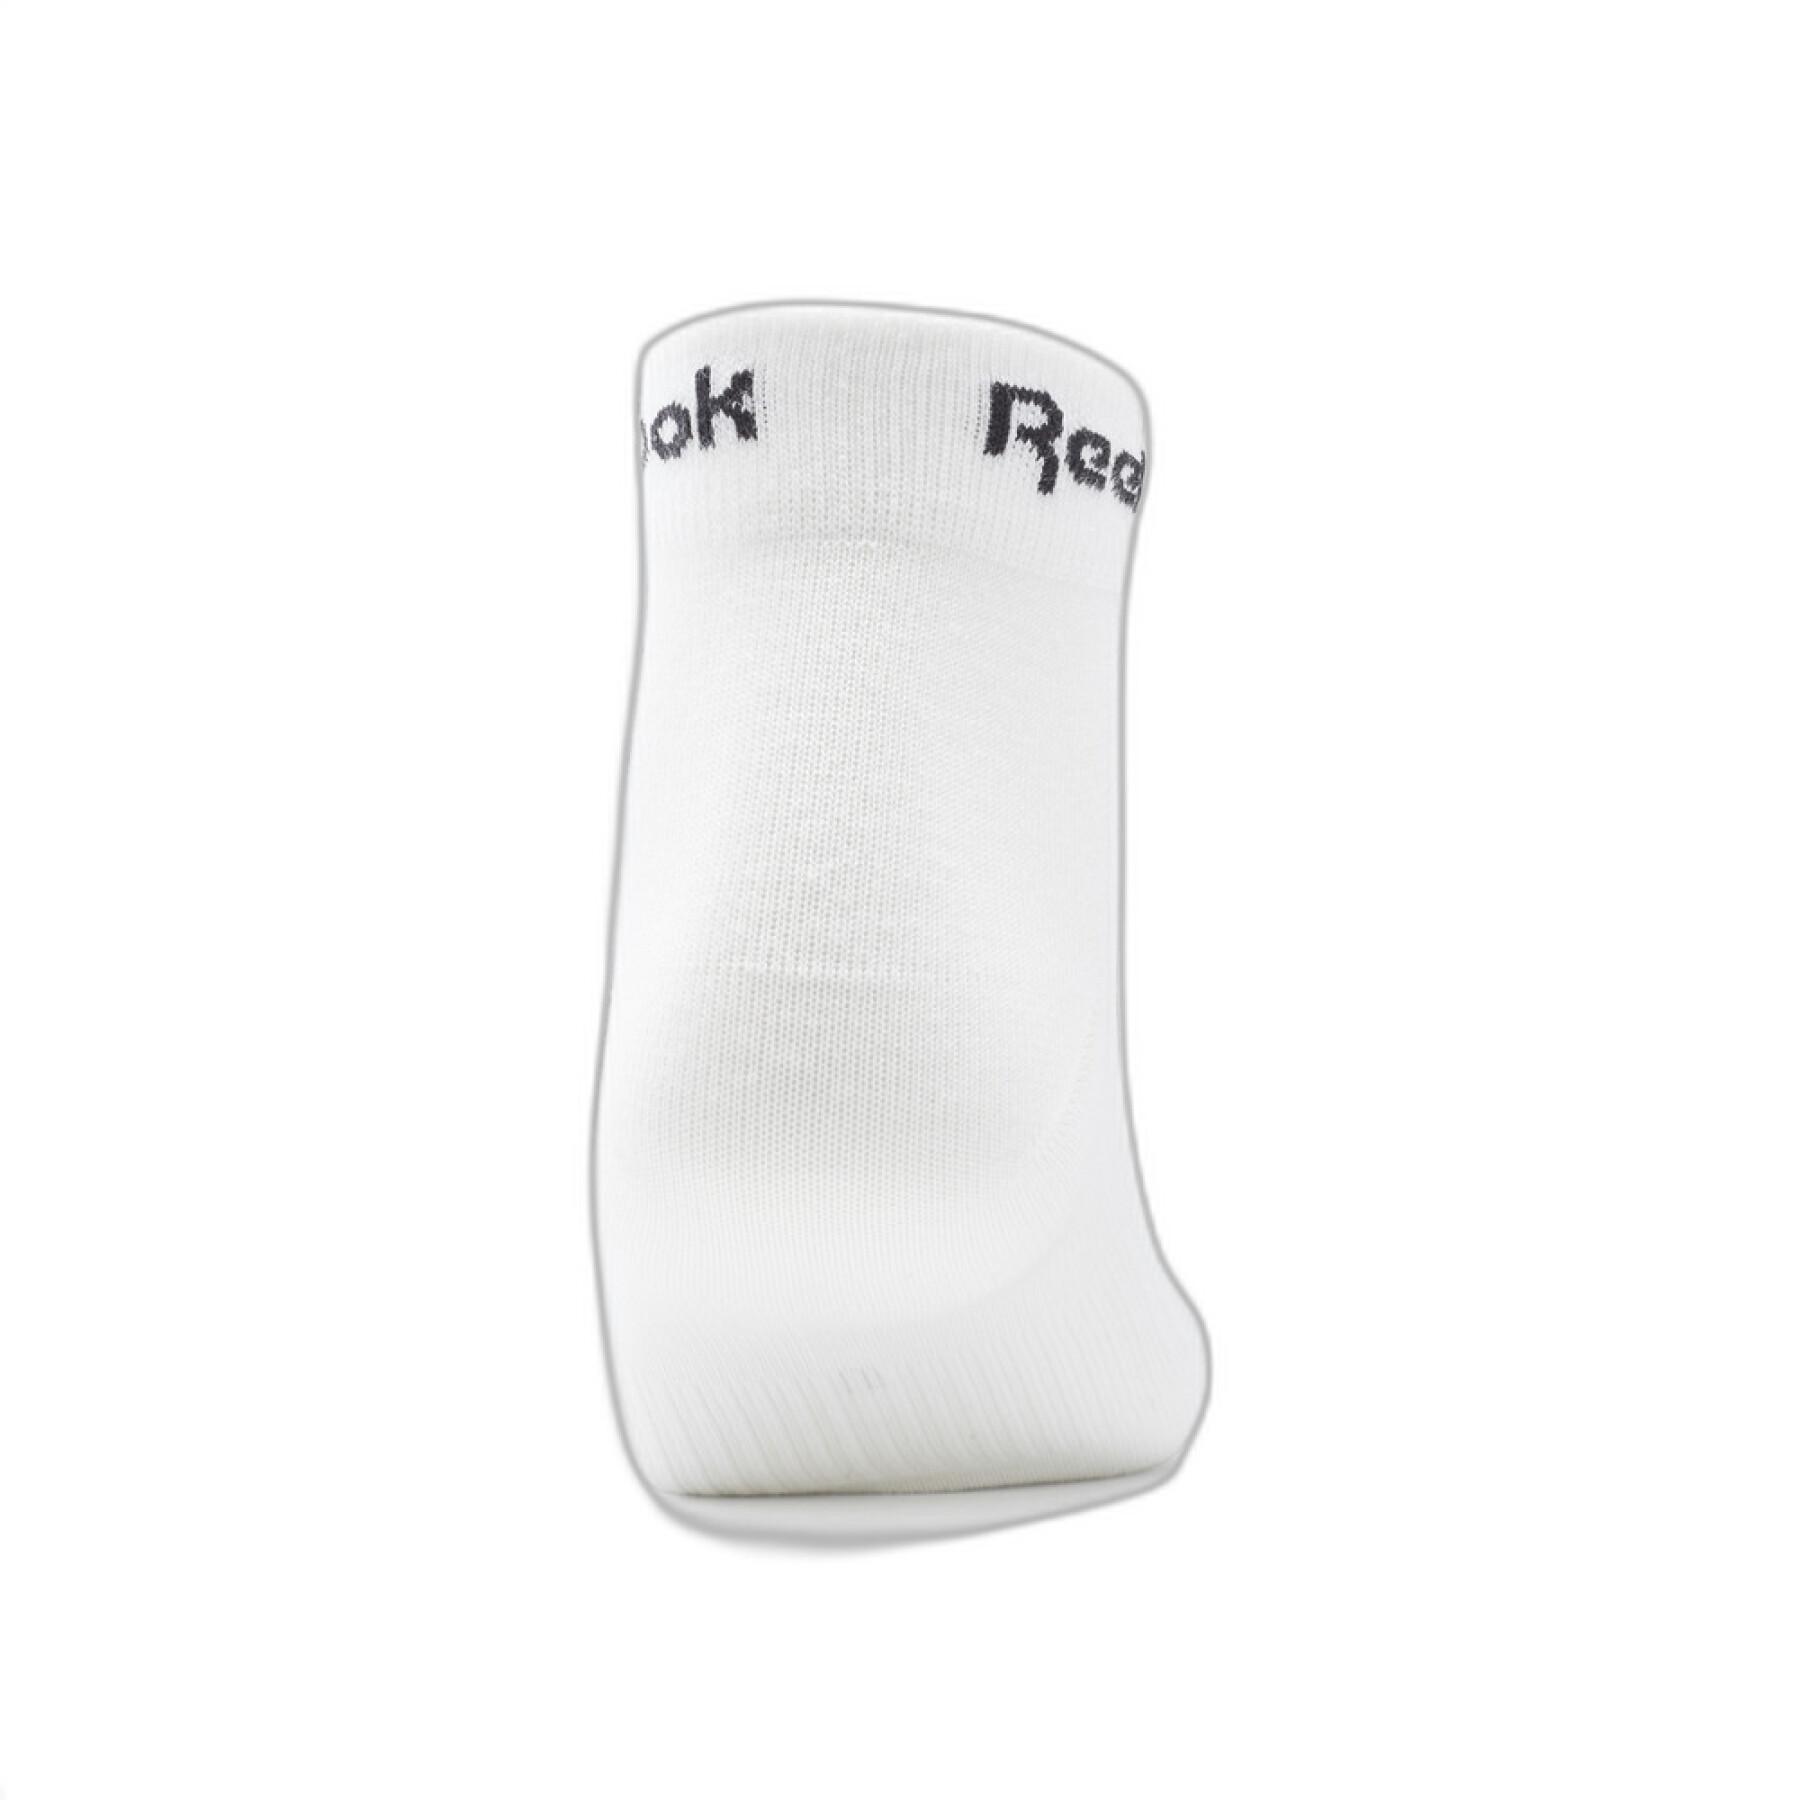 Satz von 3 Paar Socken Reebok Active Core Ankle